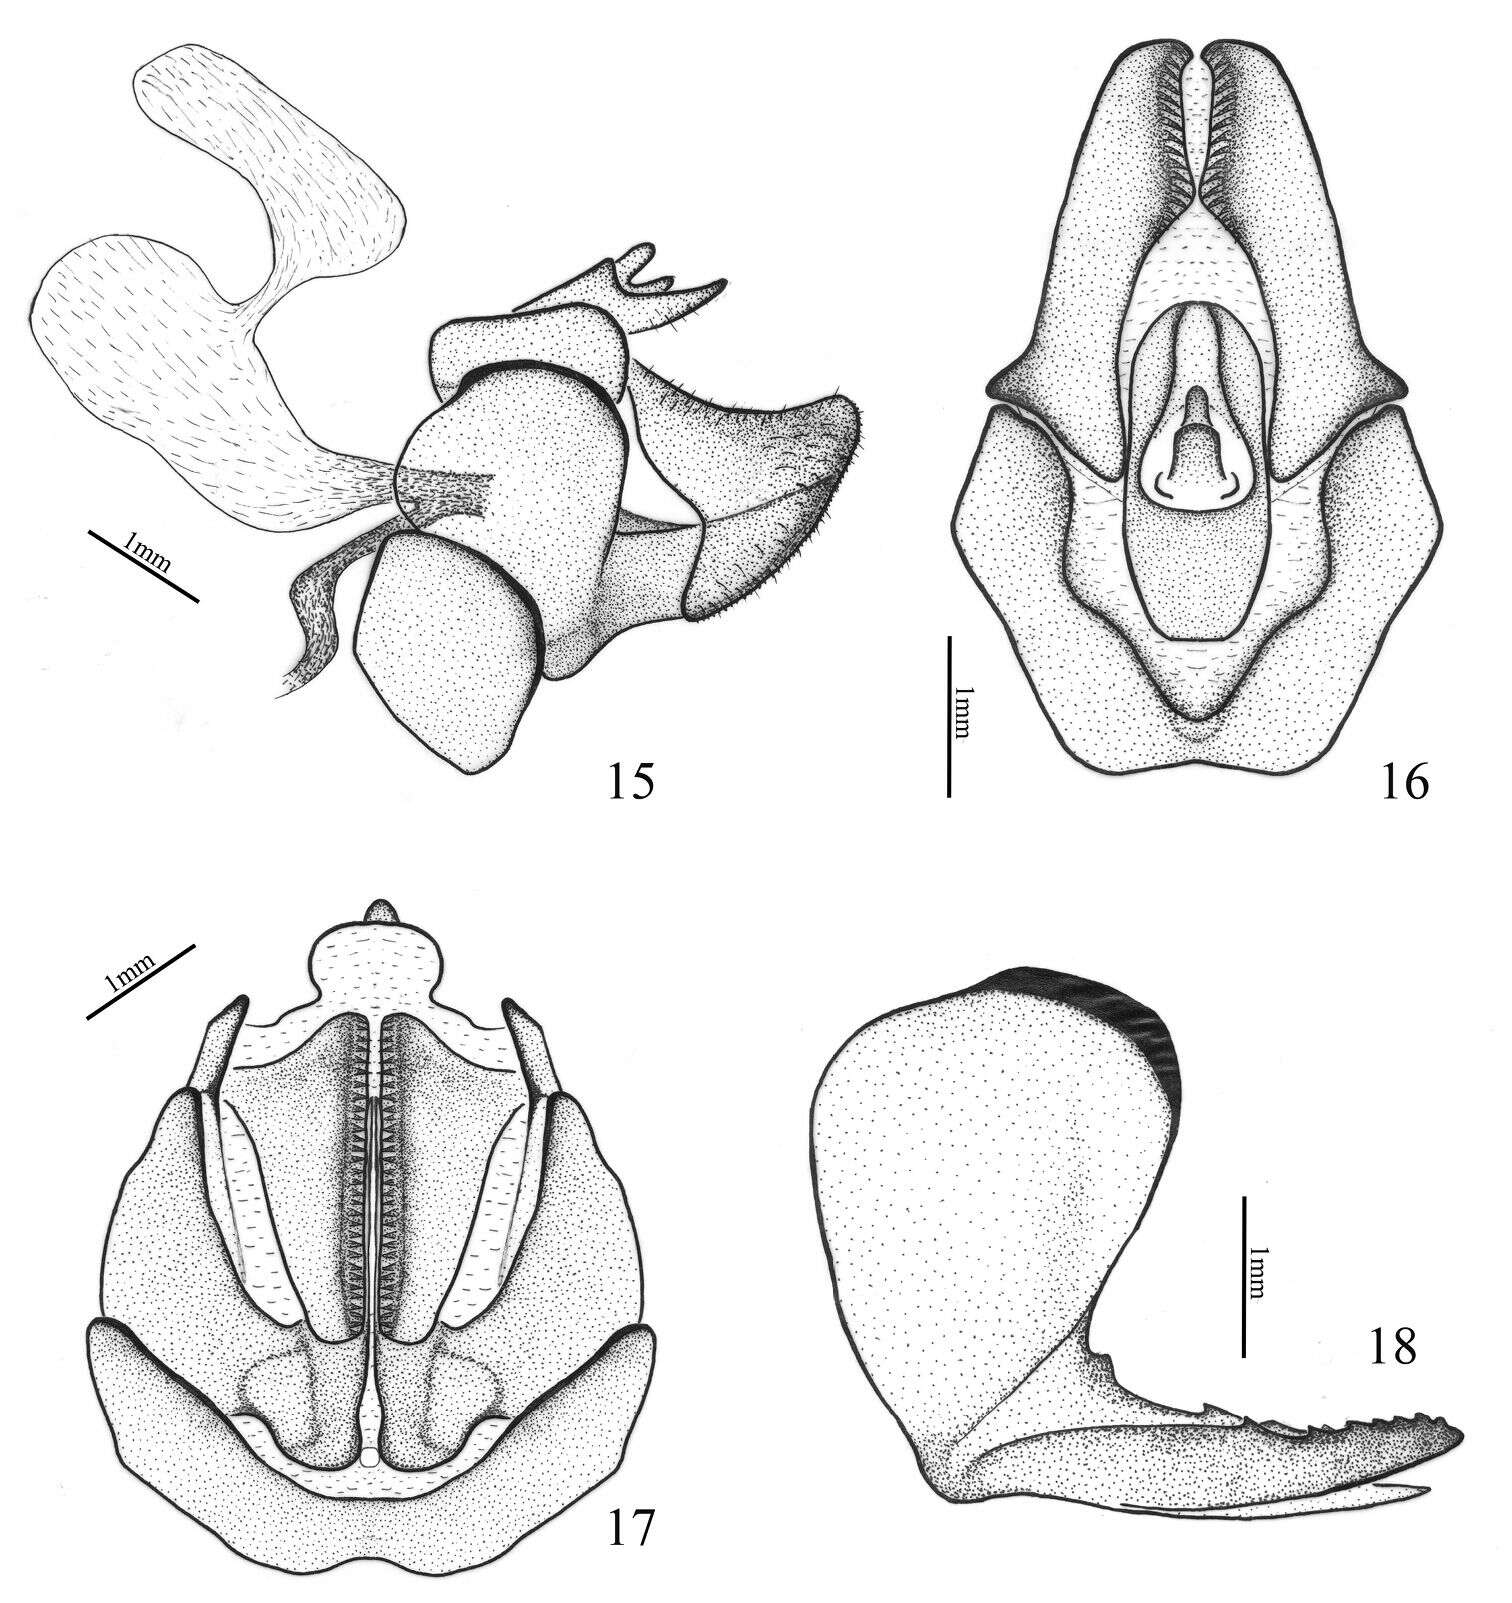 Image of Ricaniidae